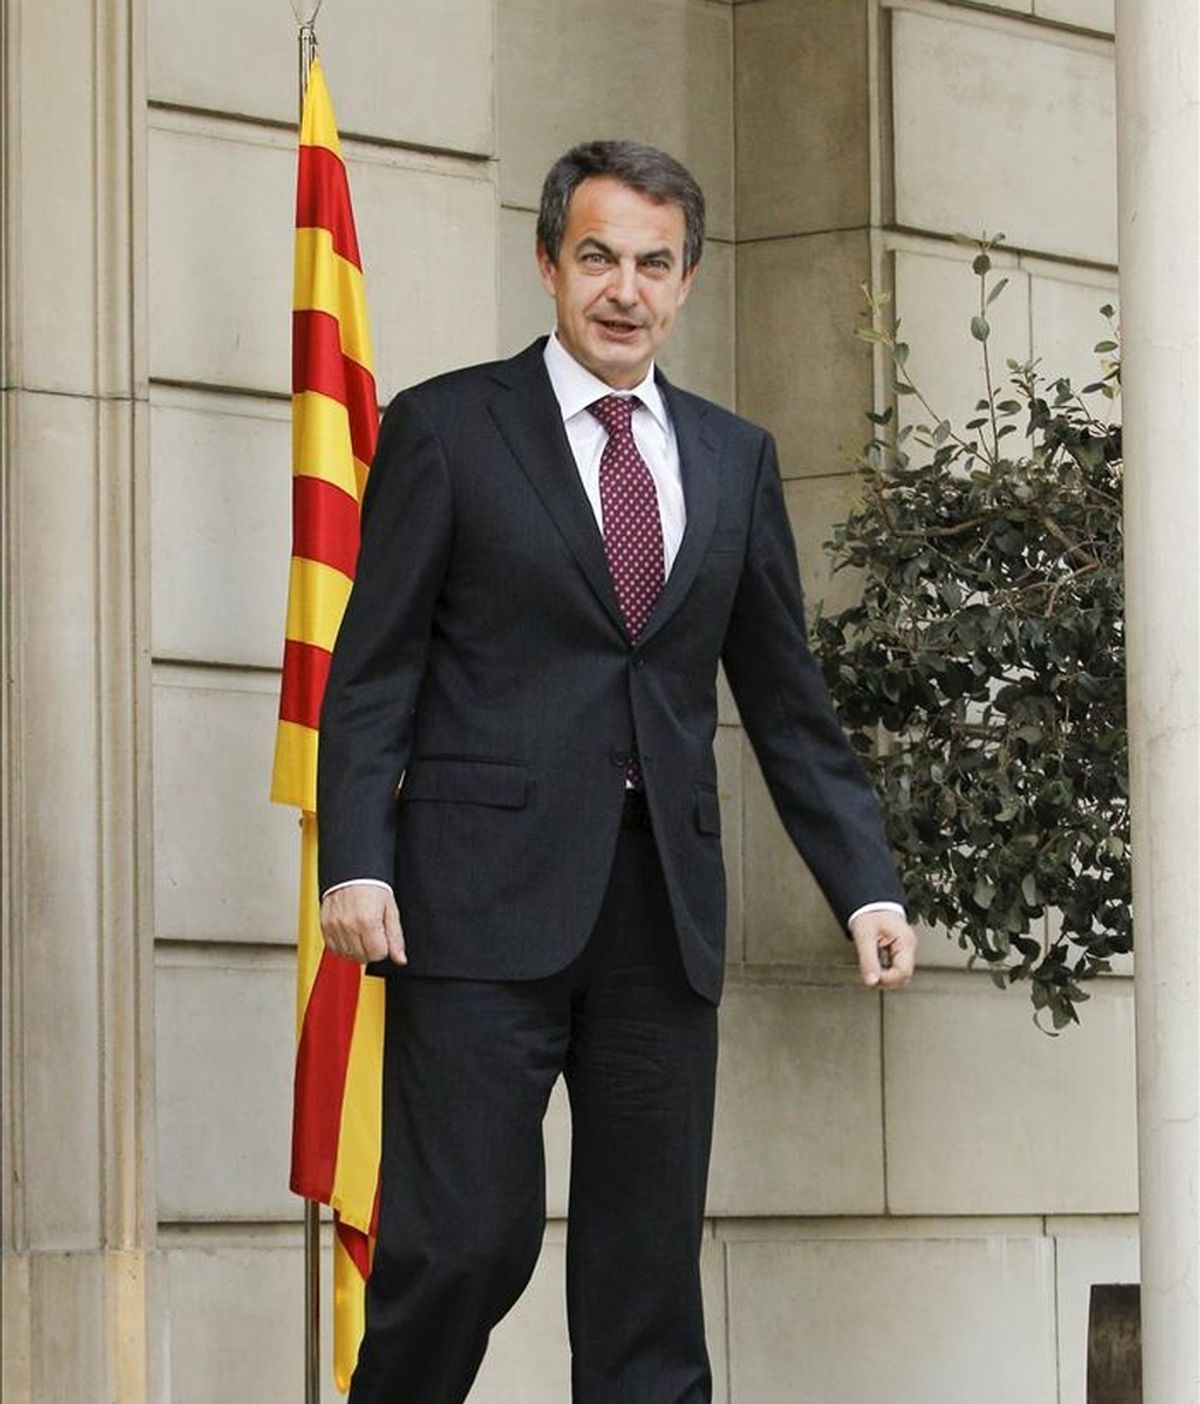 El presidente del Gobierno, José Luis Rodríguez Zapatero, hoy en el palacio de la Moncloa. EFE